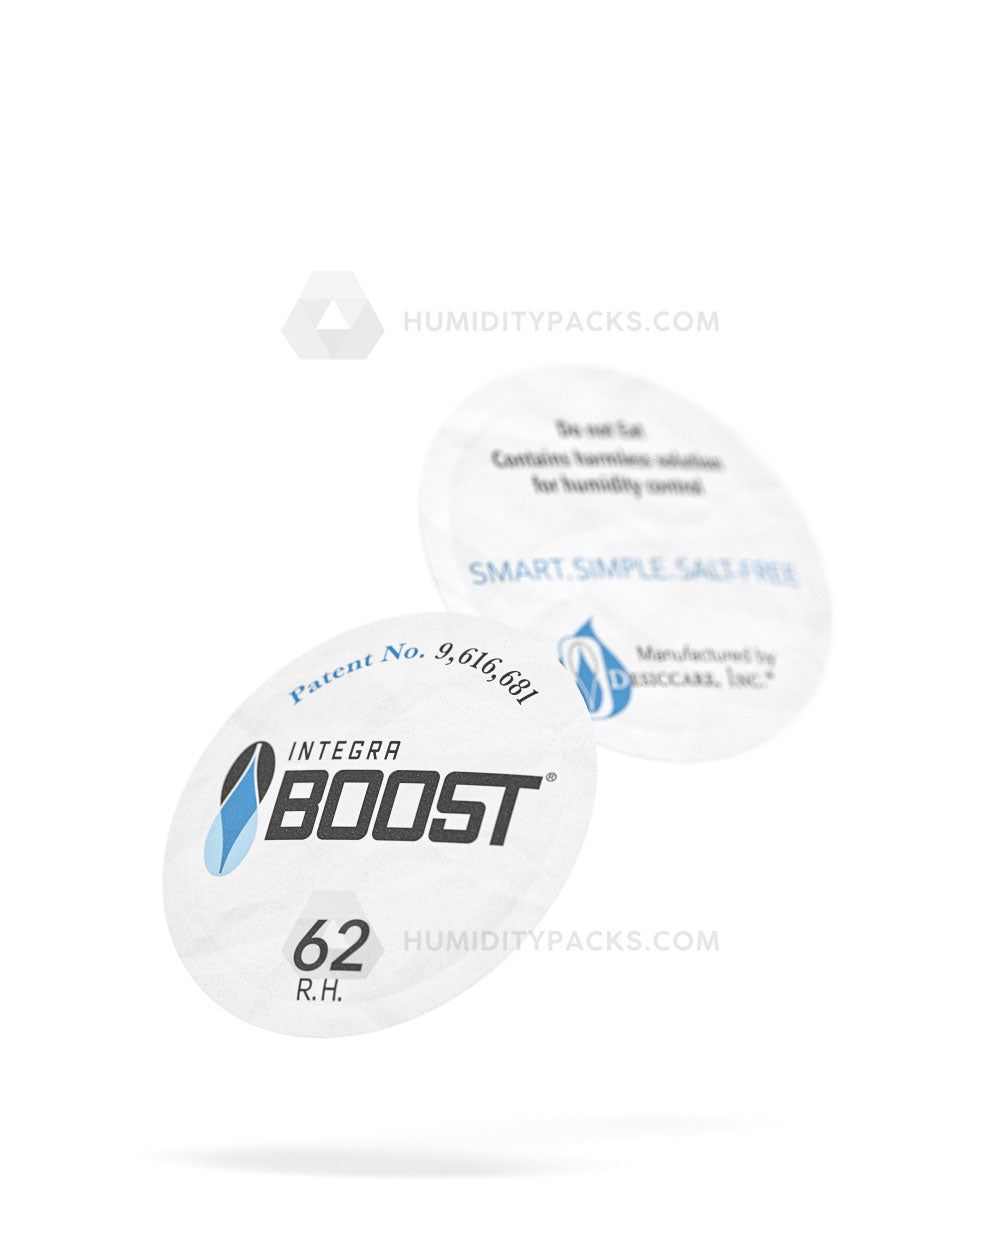 38mm Integra Boost 62% Humidity Packs 100/Box